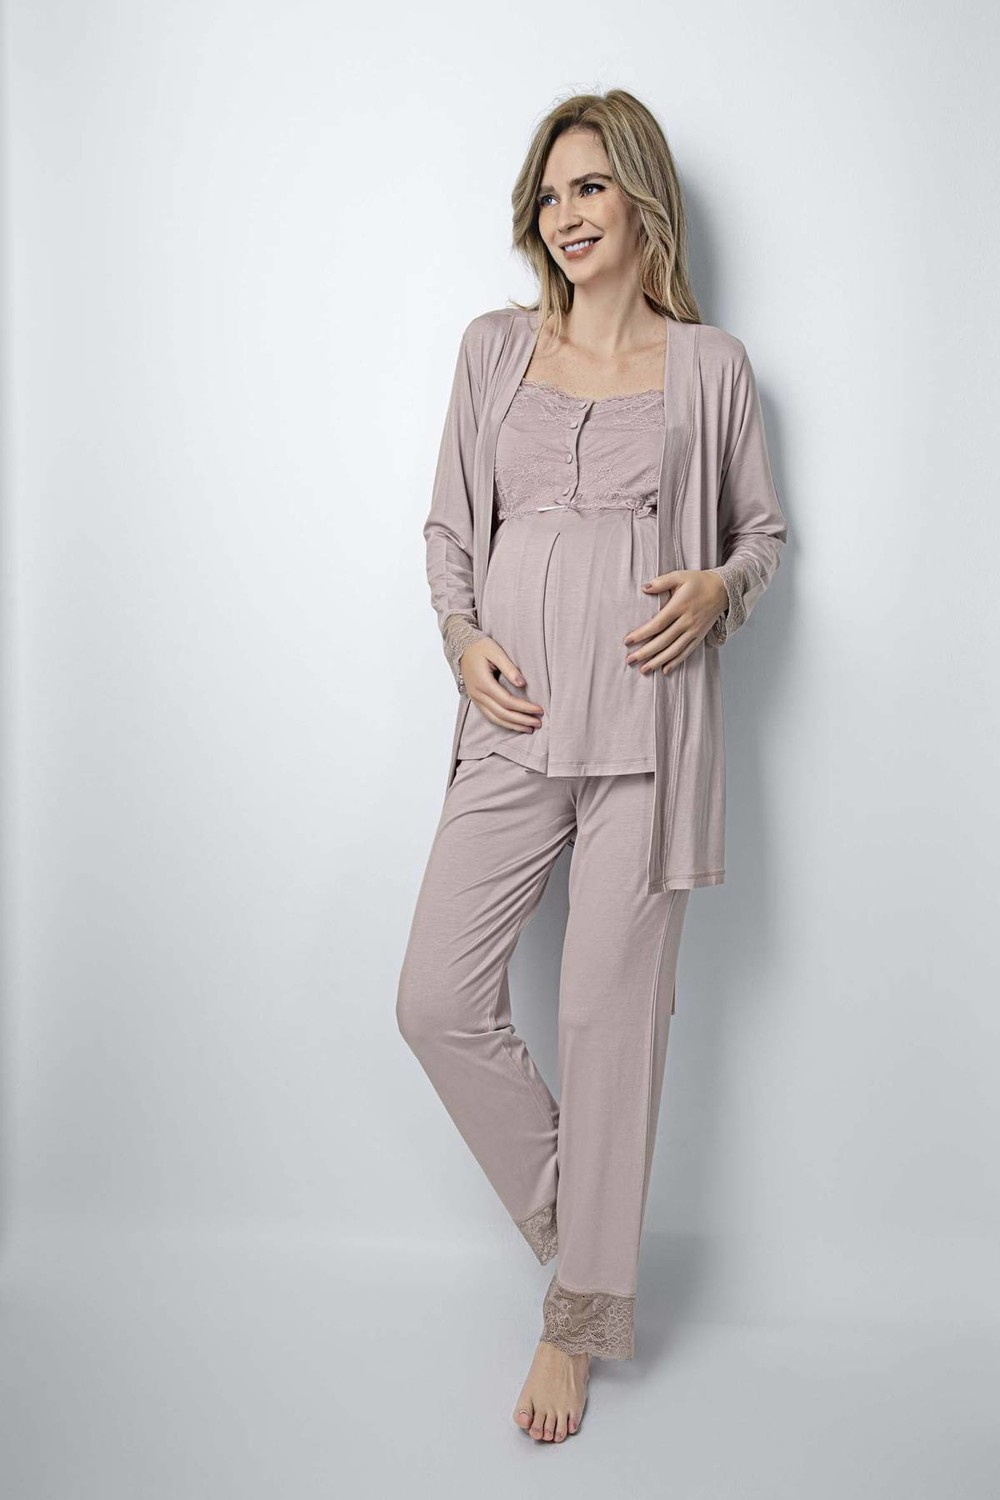 Пижамный комплект Monamise 18441 для беременных после родов - Норка